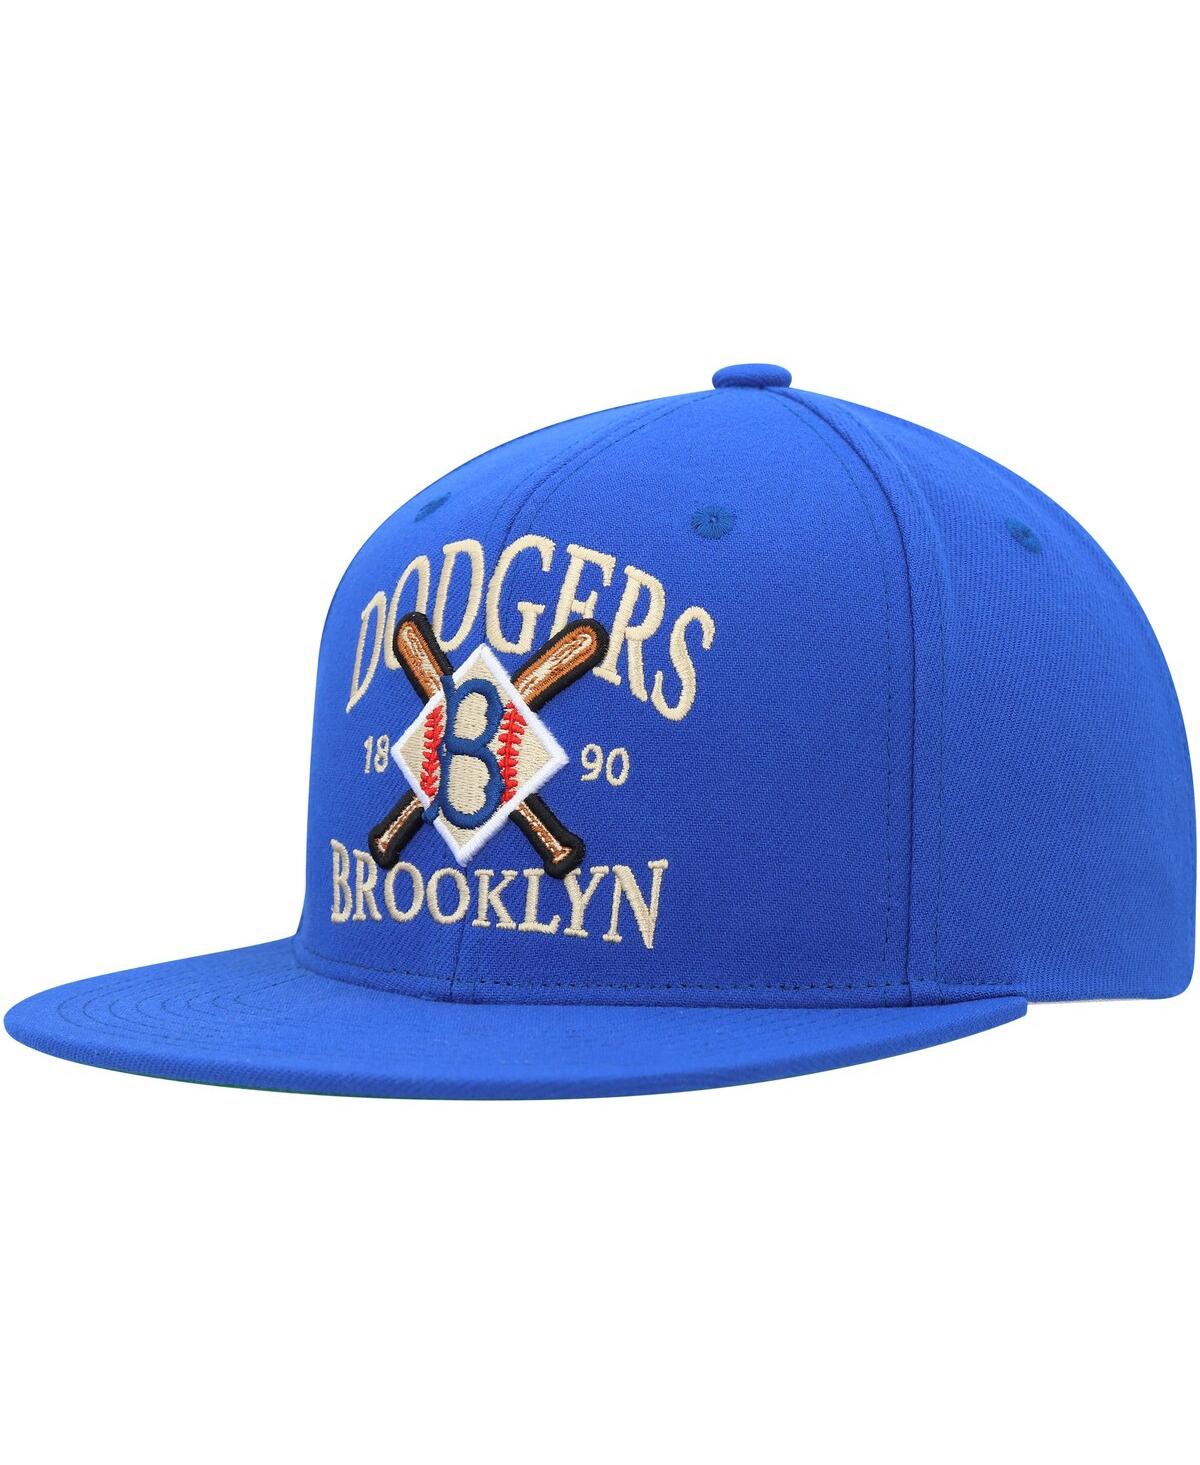 Men's New York Yankees Mitchell & Ness Cream Reframe Retro Snapback Hat